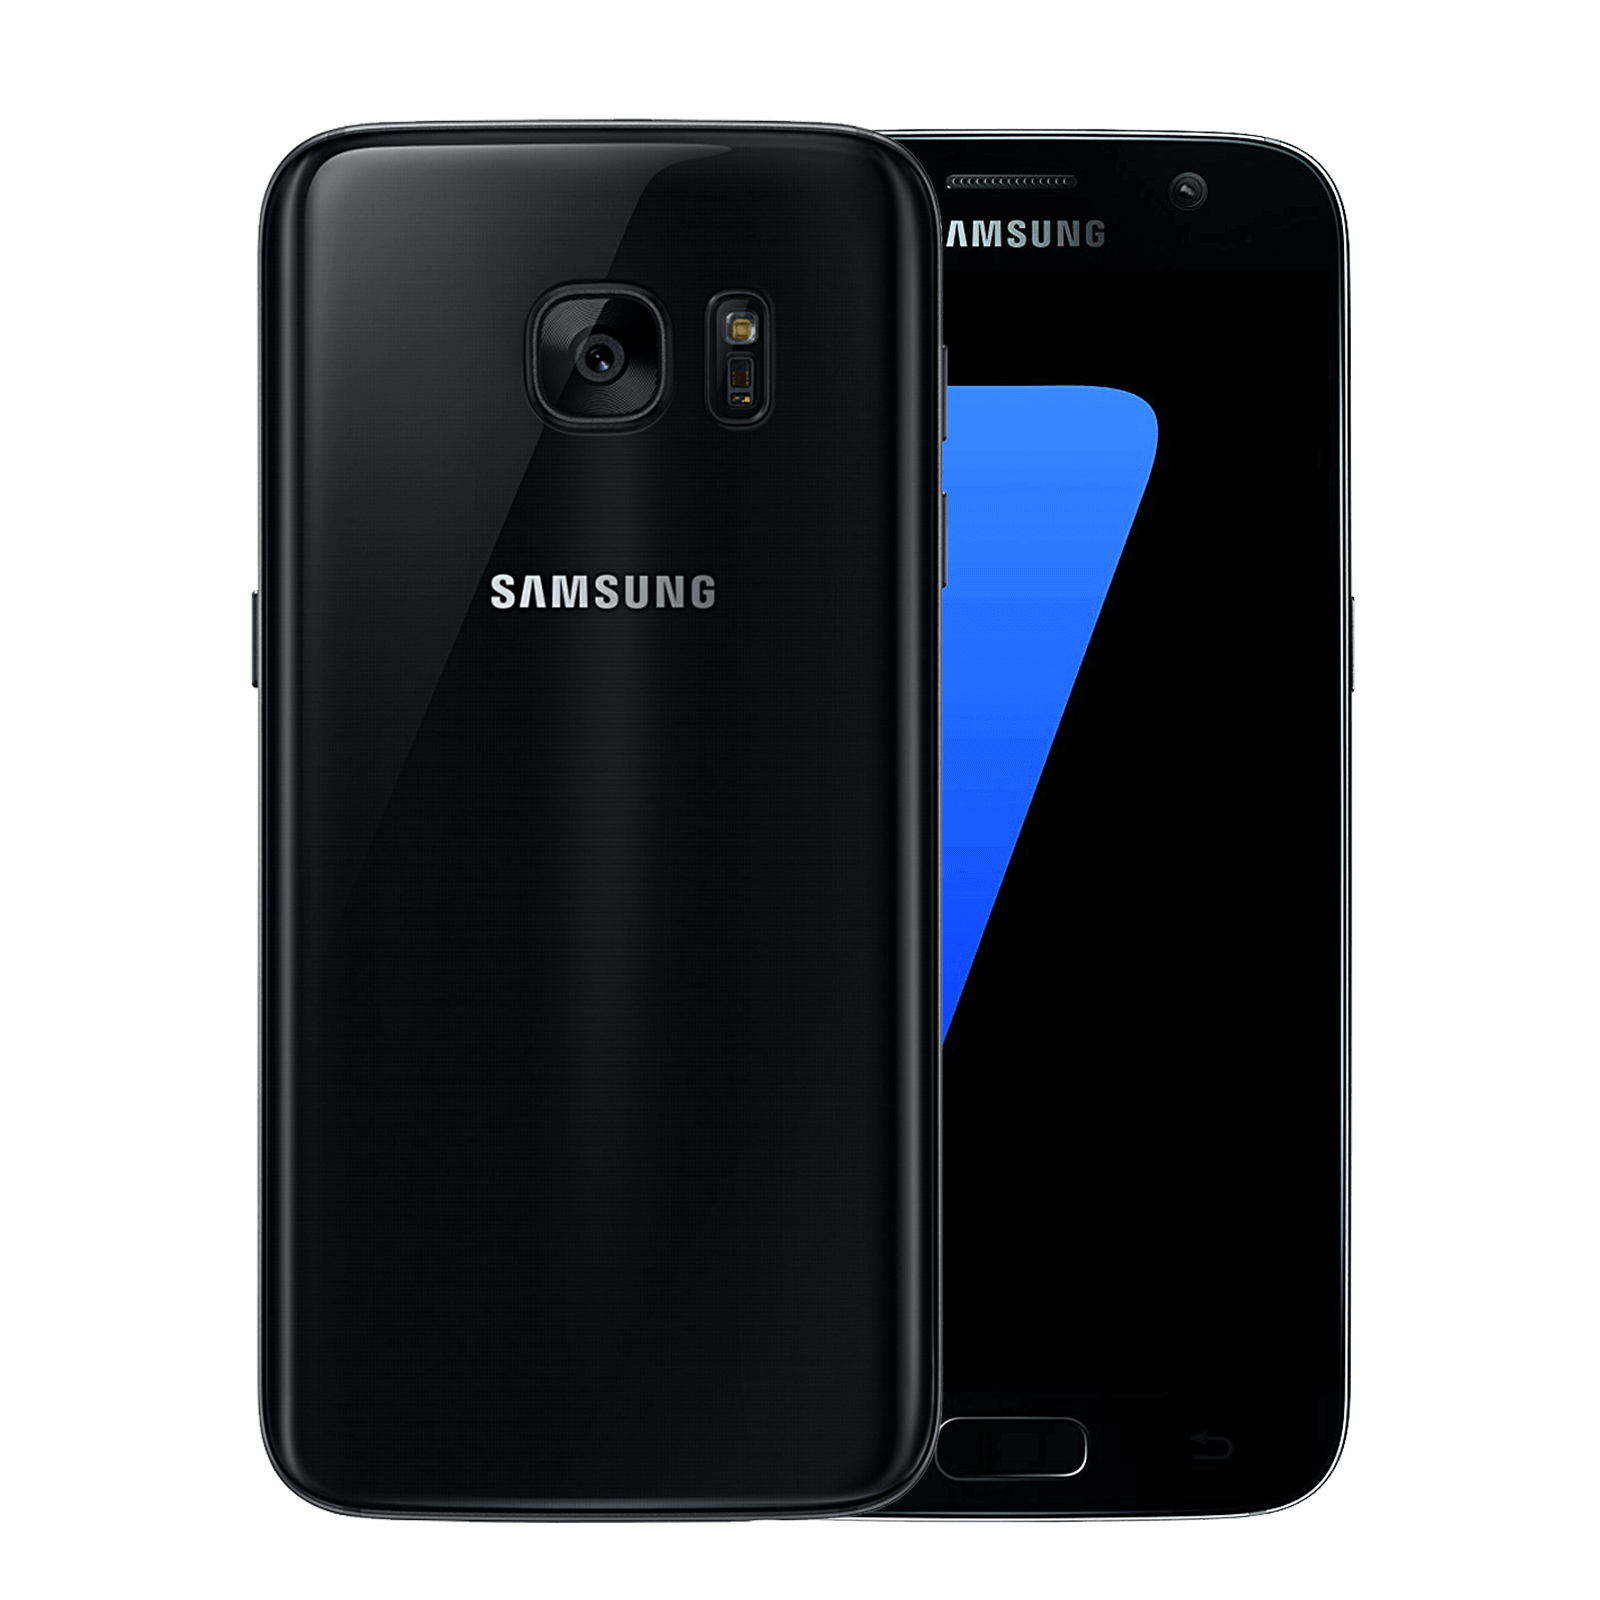 Samsung Galaxy S7 32GB Black Very good - Unlocked